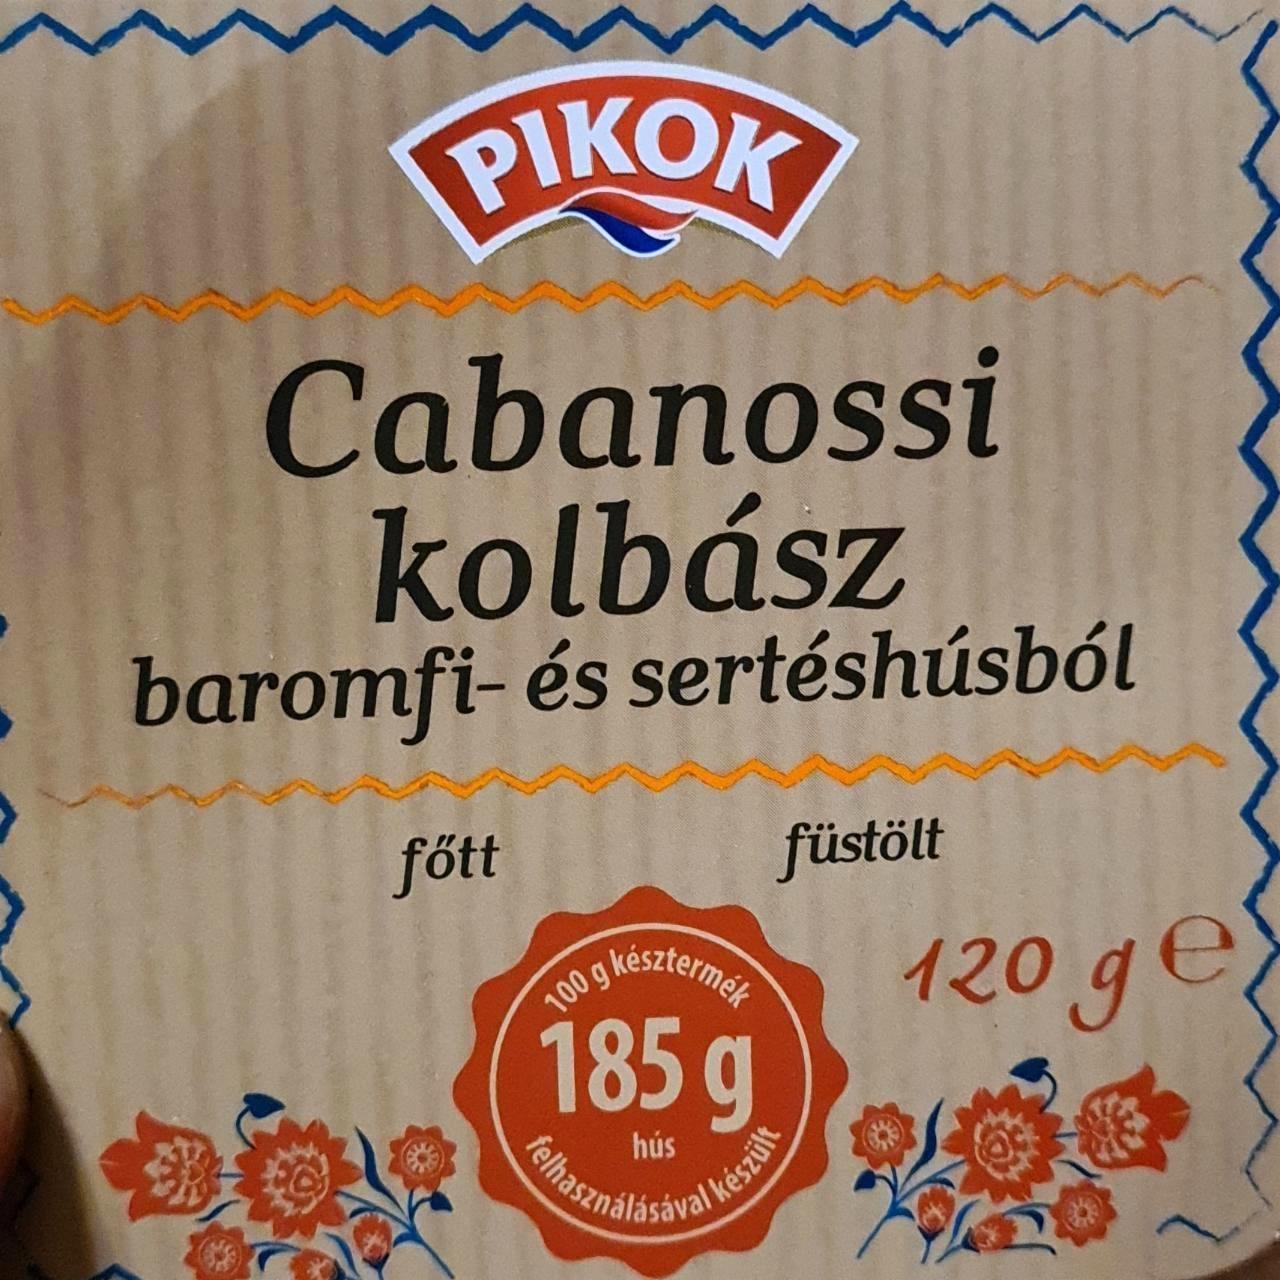 Képek - Cabanossi kolbász baromfi és sertéshúsból Pikok